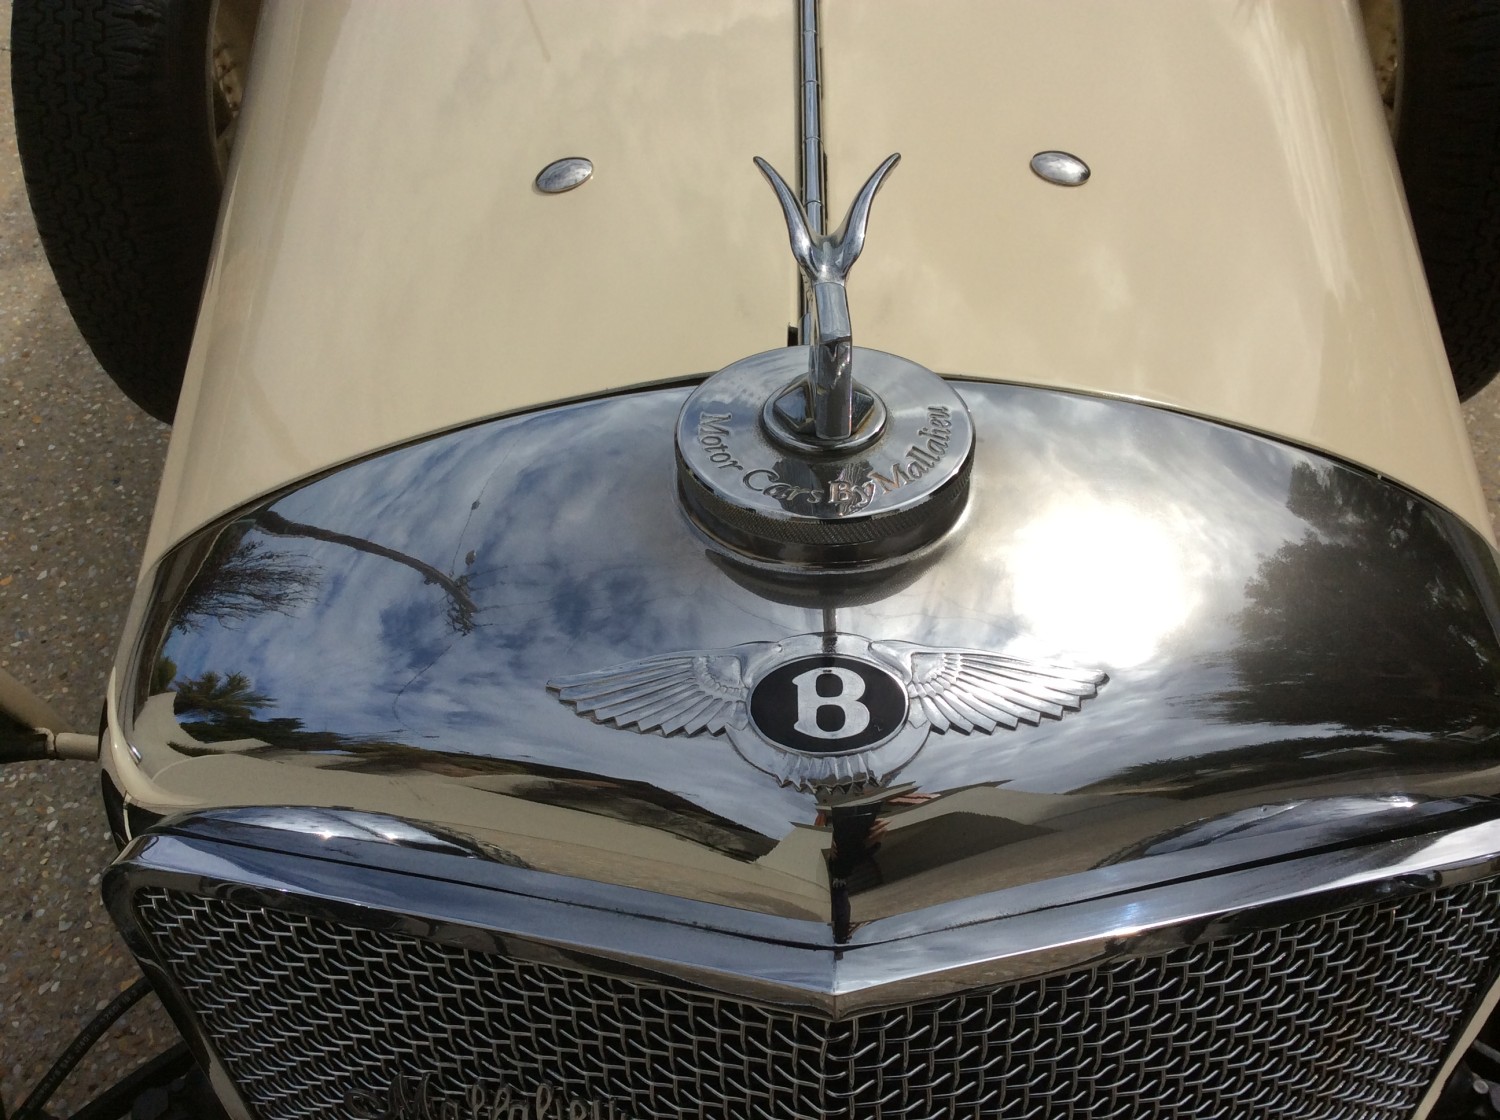 1948 Bentley Mallalieu